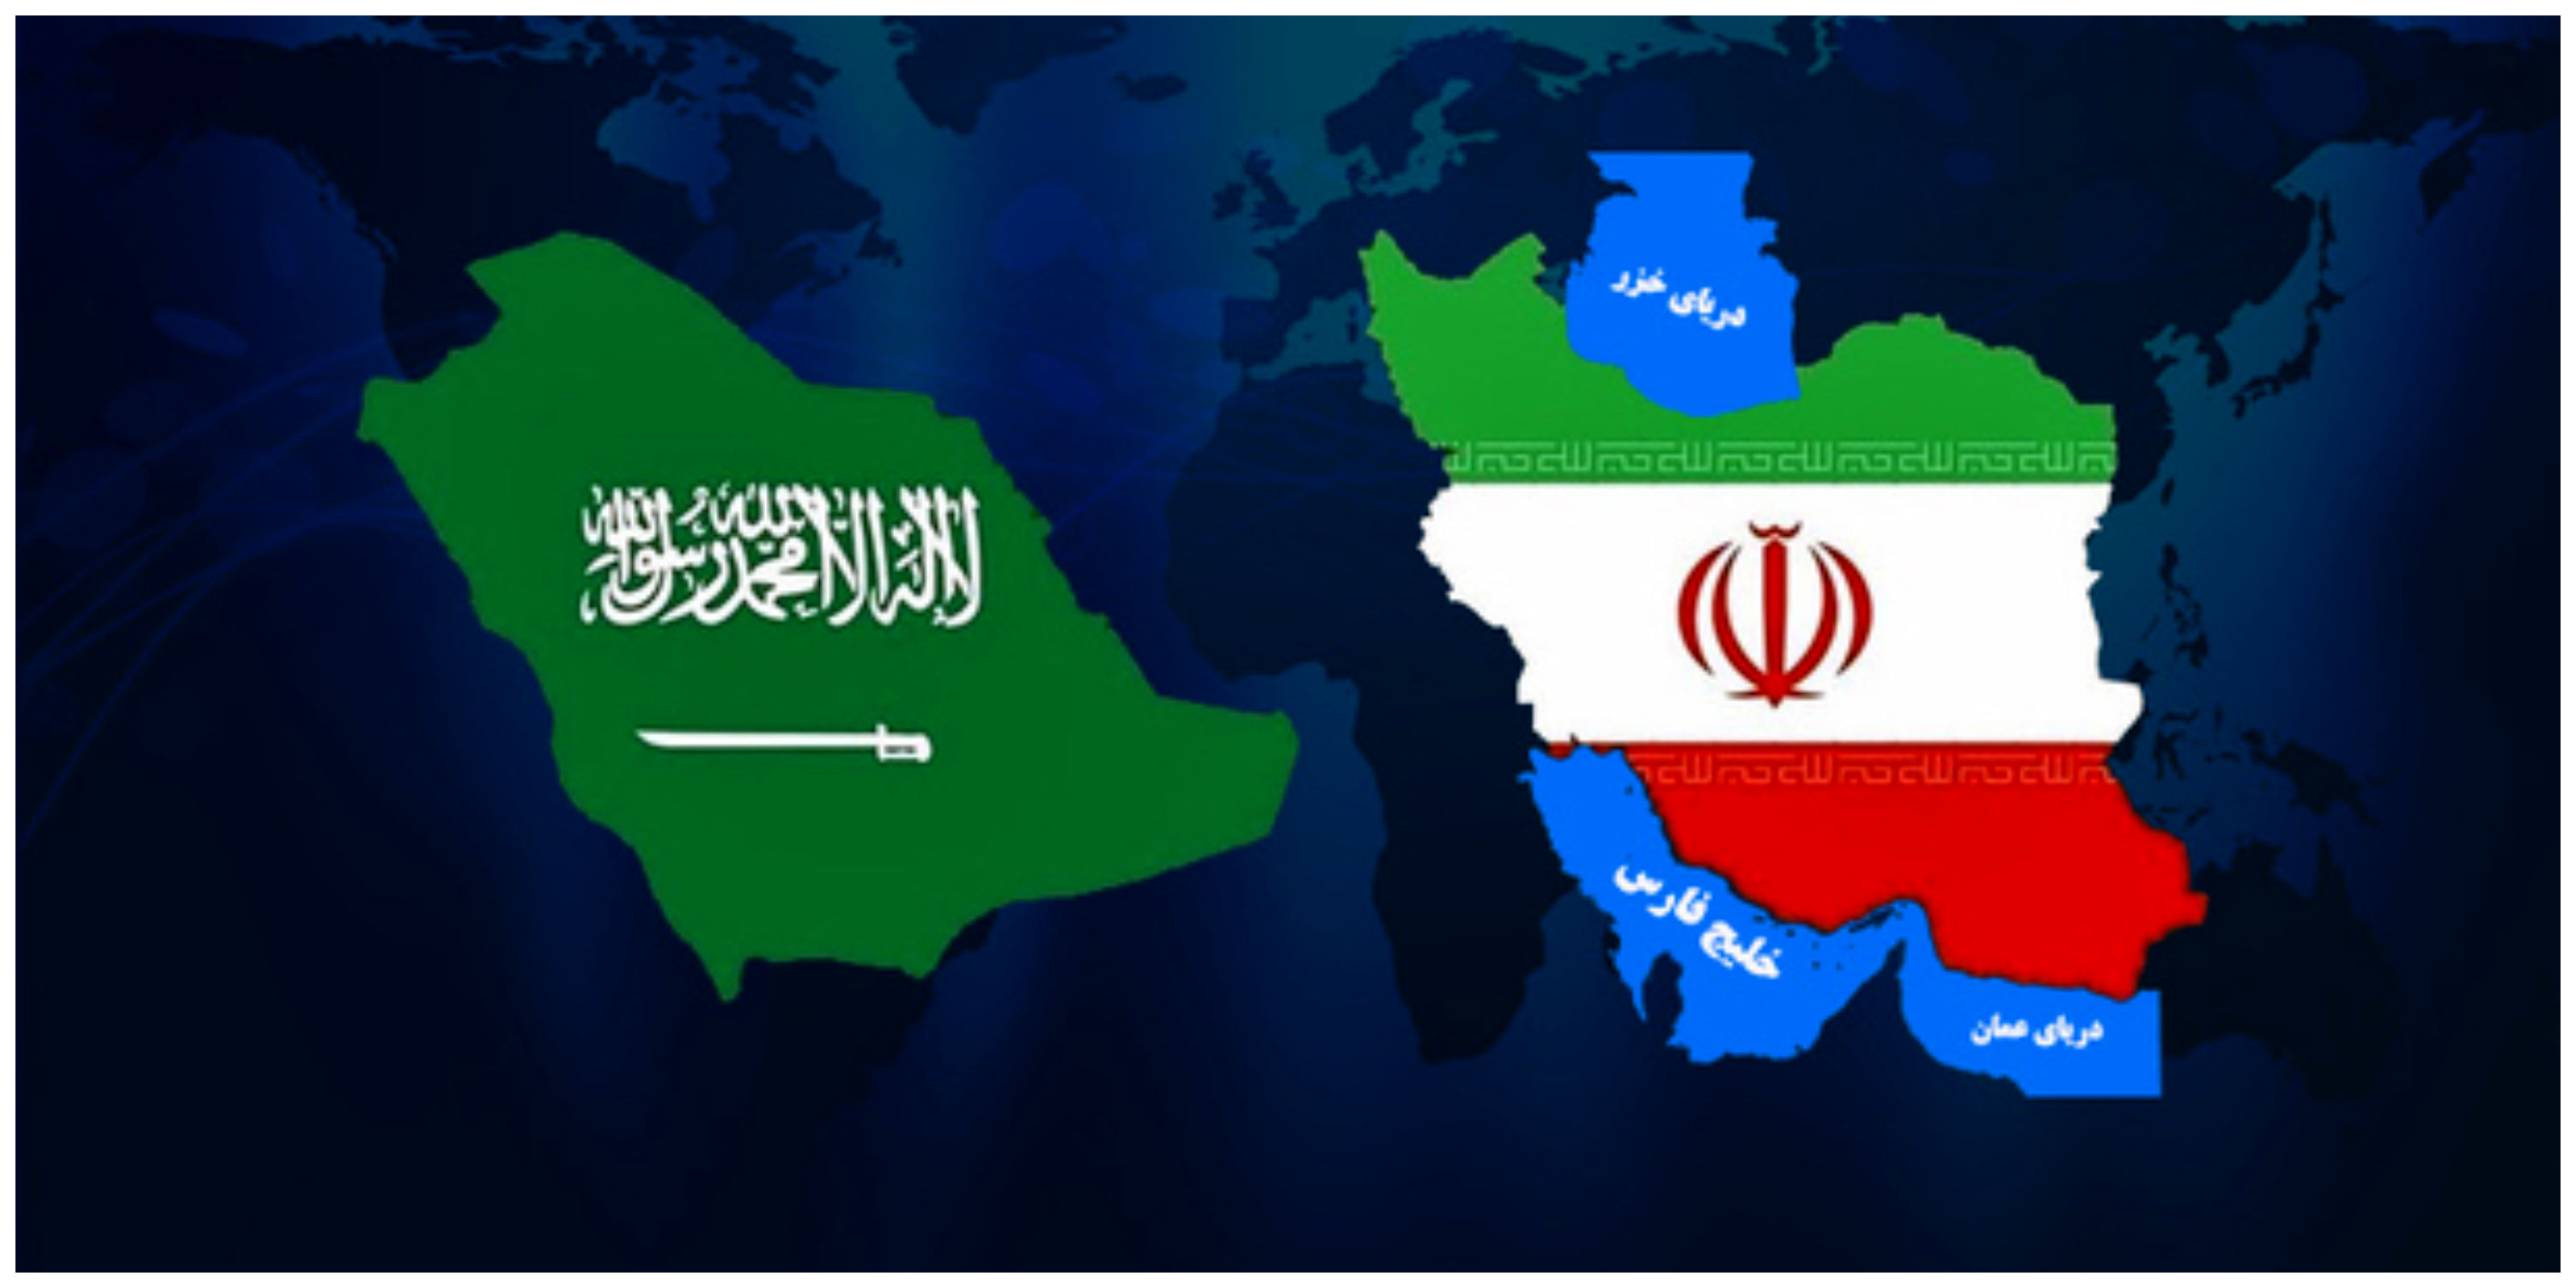 واکنش نشریه آمریکایی به توافق ایران و عربستان/ شکستی شوک آور برای آمریکا